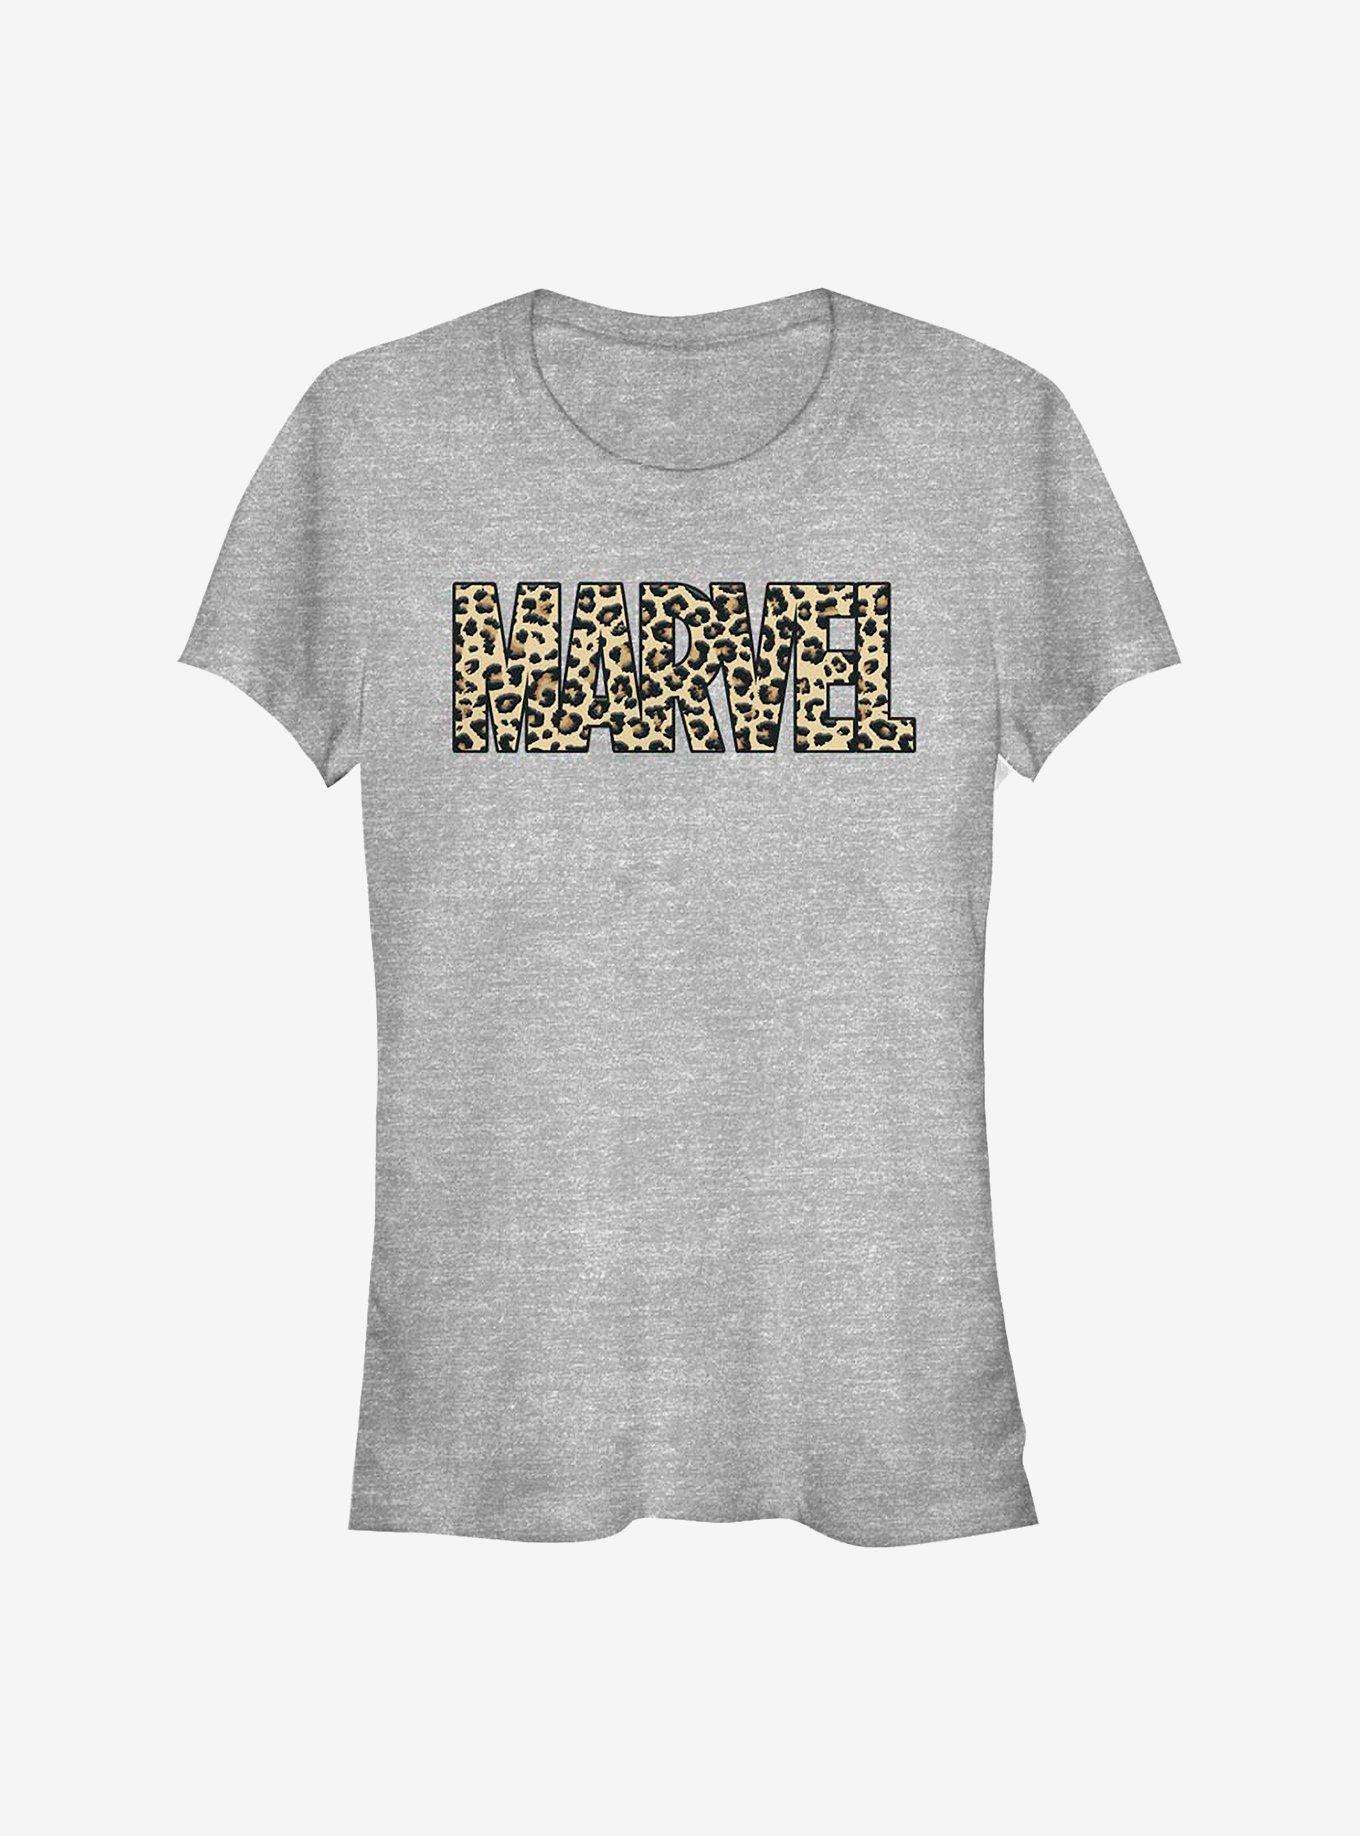 Marvel Leopard Girls T-Shirt, ATH HTR, hi-res